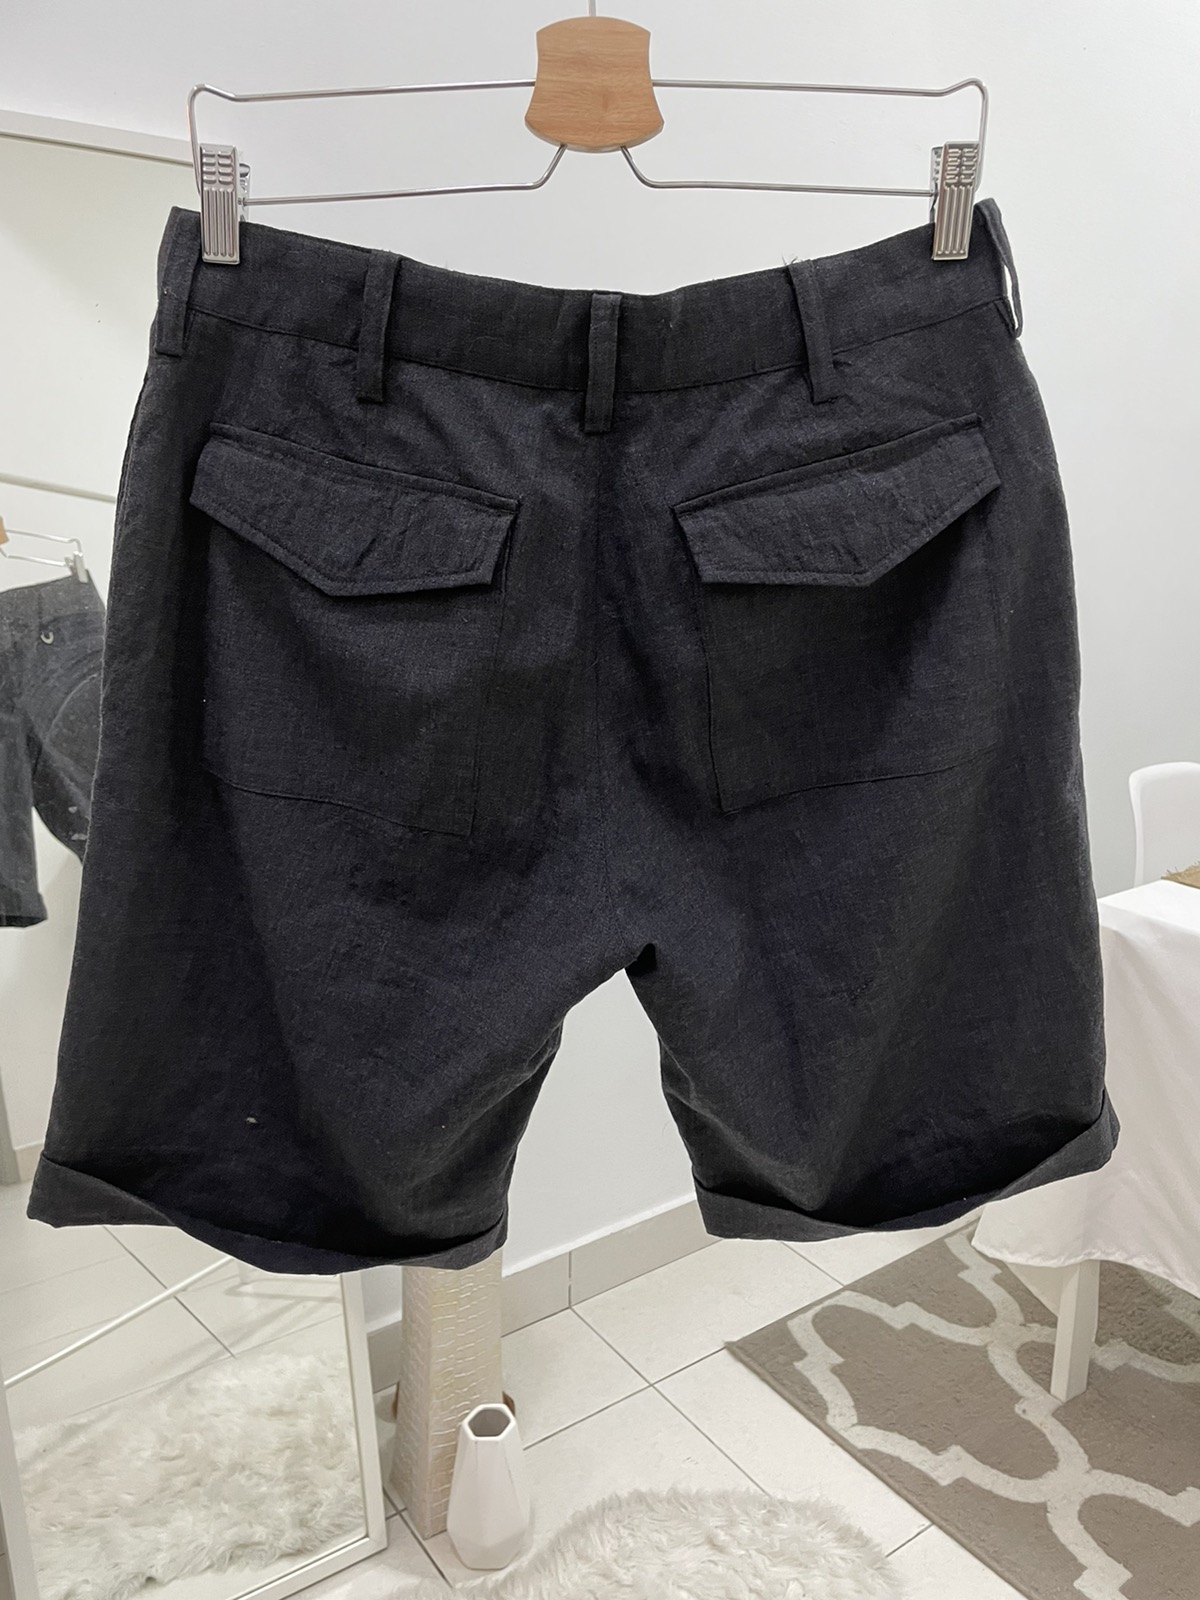 Japanese Brand Sophnet. Short Pants - 2